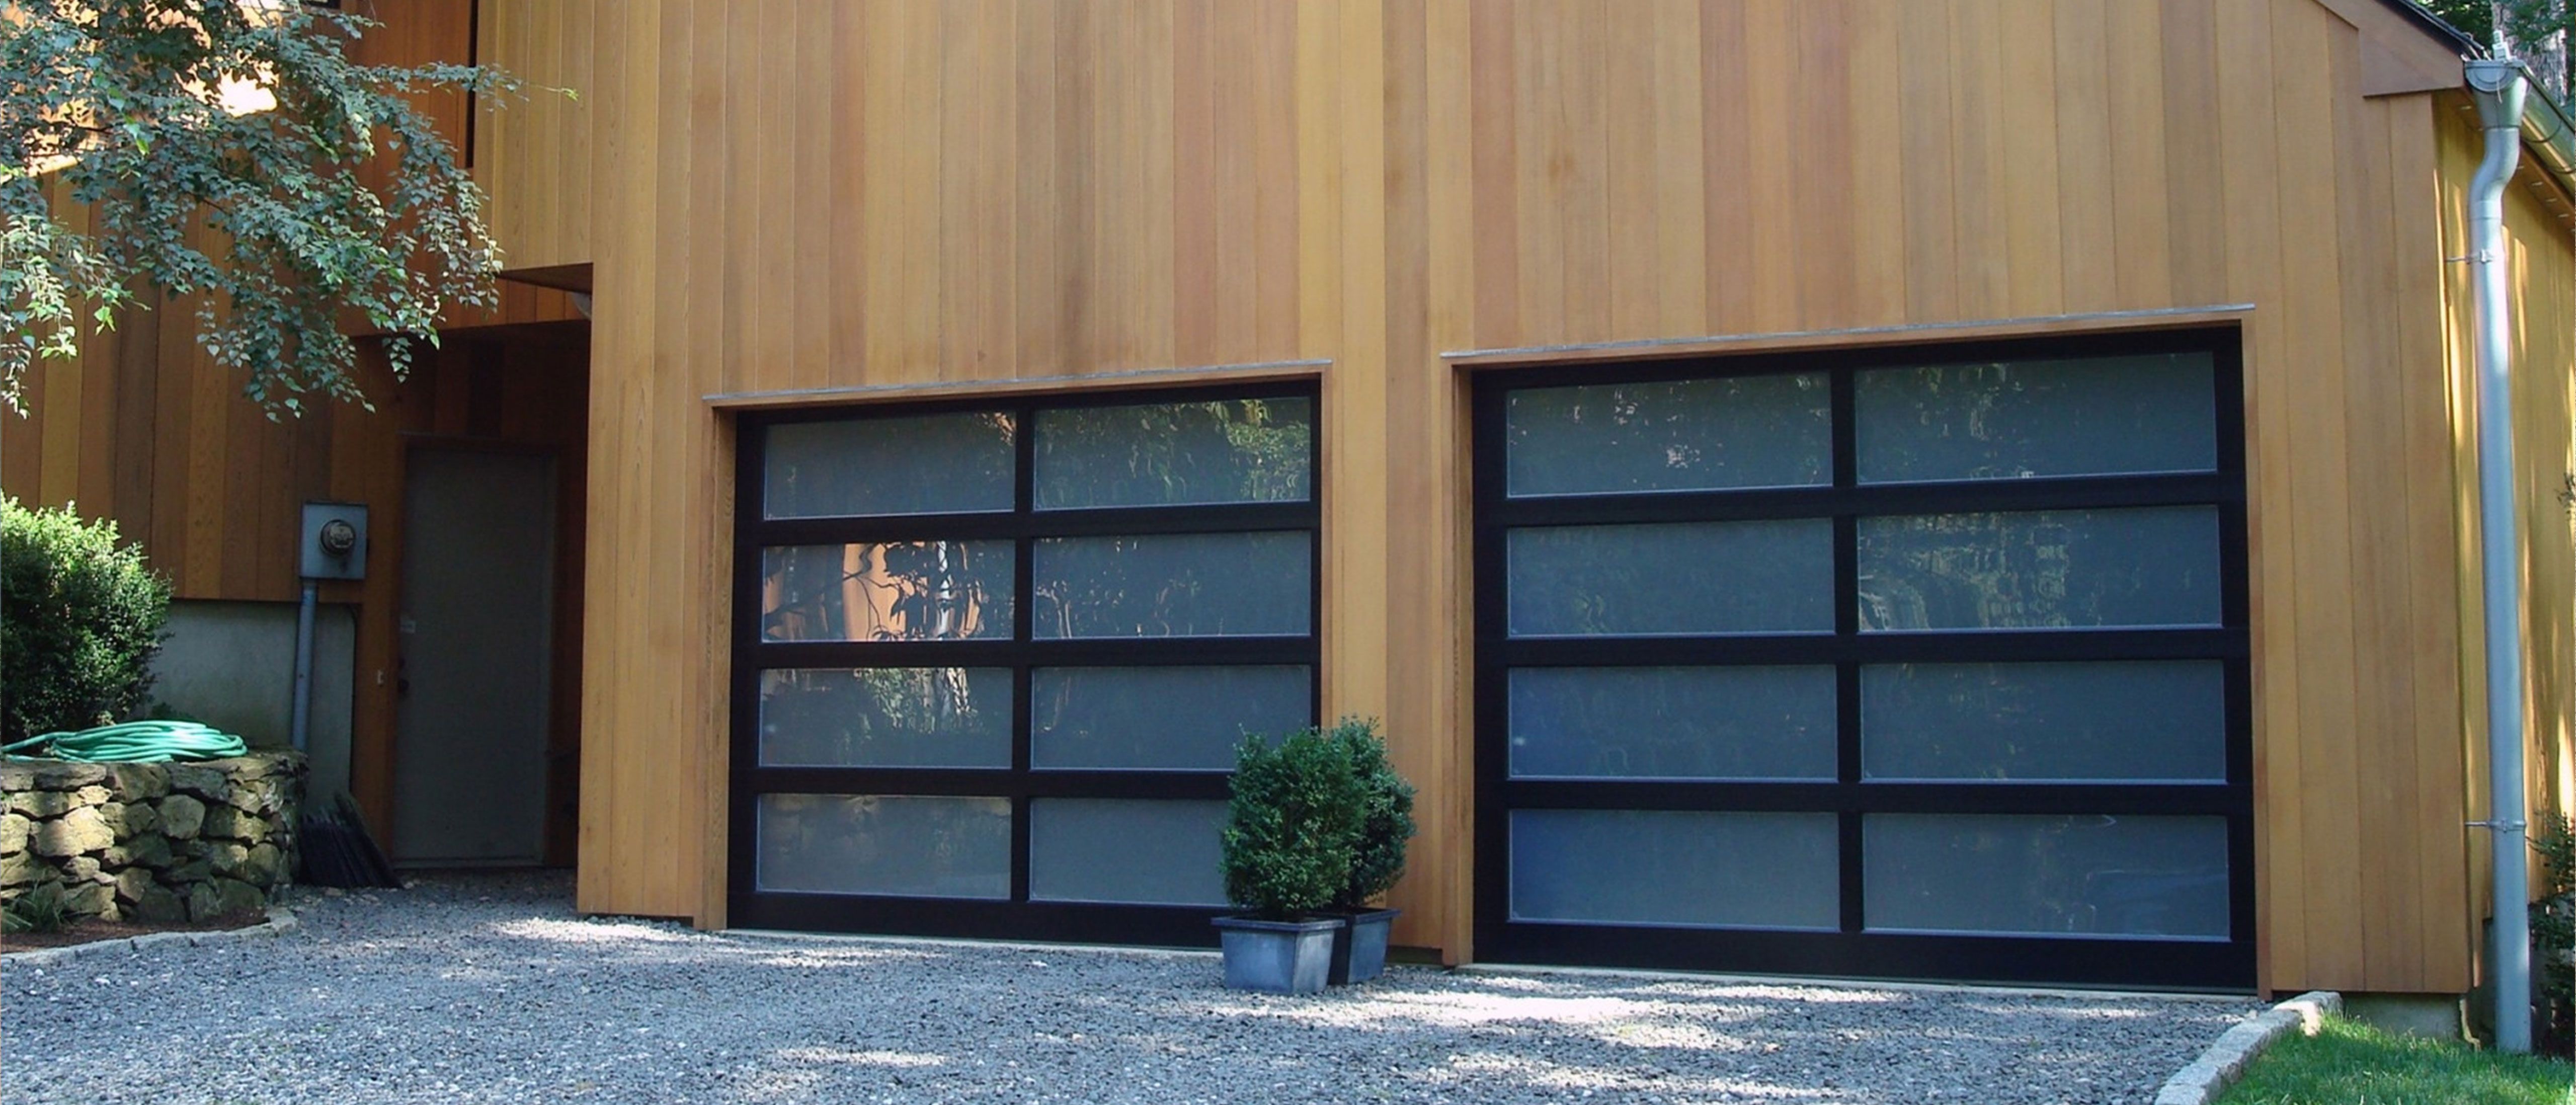 Porte Garage a Pavia Passive House Installazione Preventivo Costo Casa Villa Villetta residenziali  industriali aziendali Porte tipo serrande  